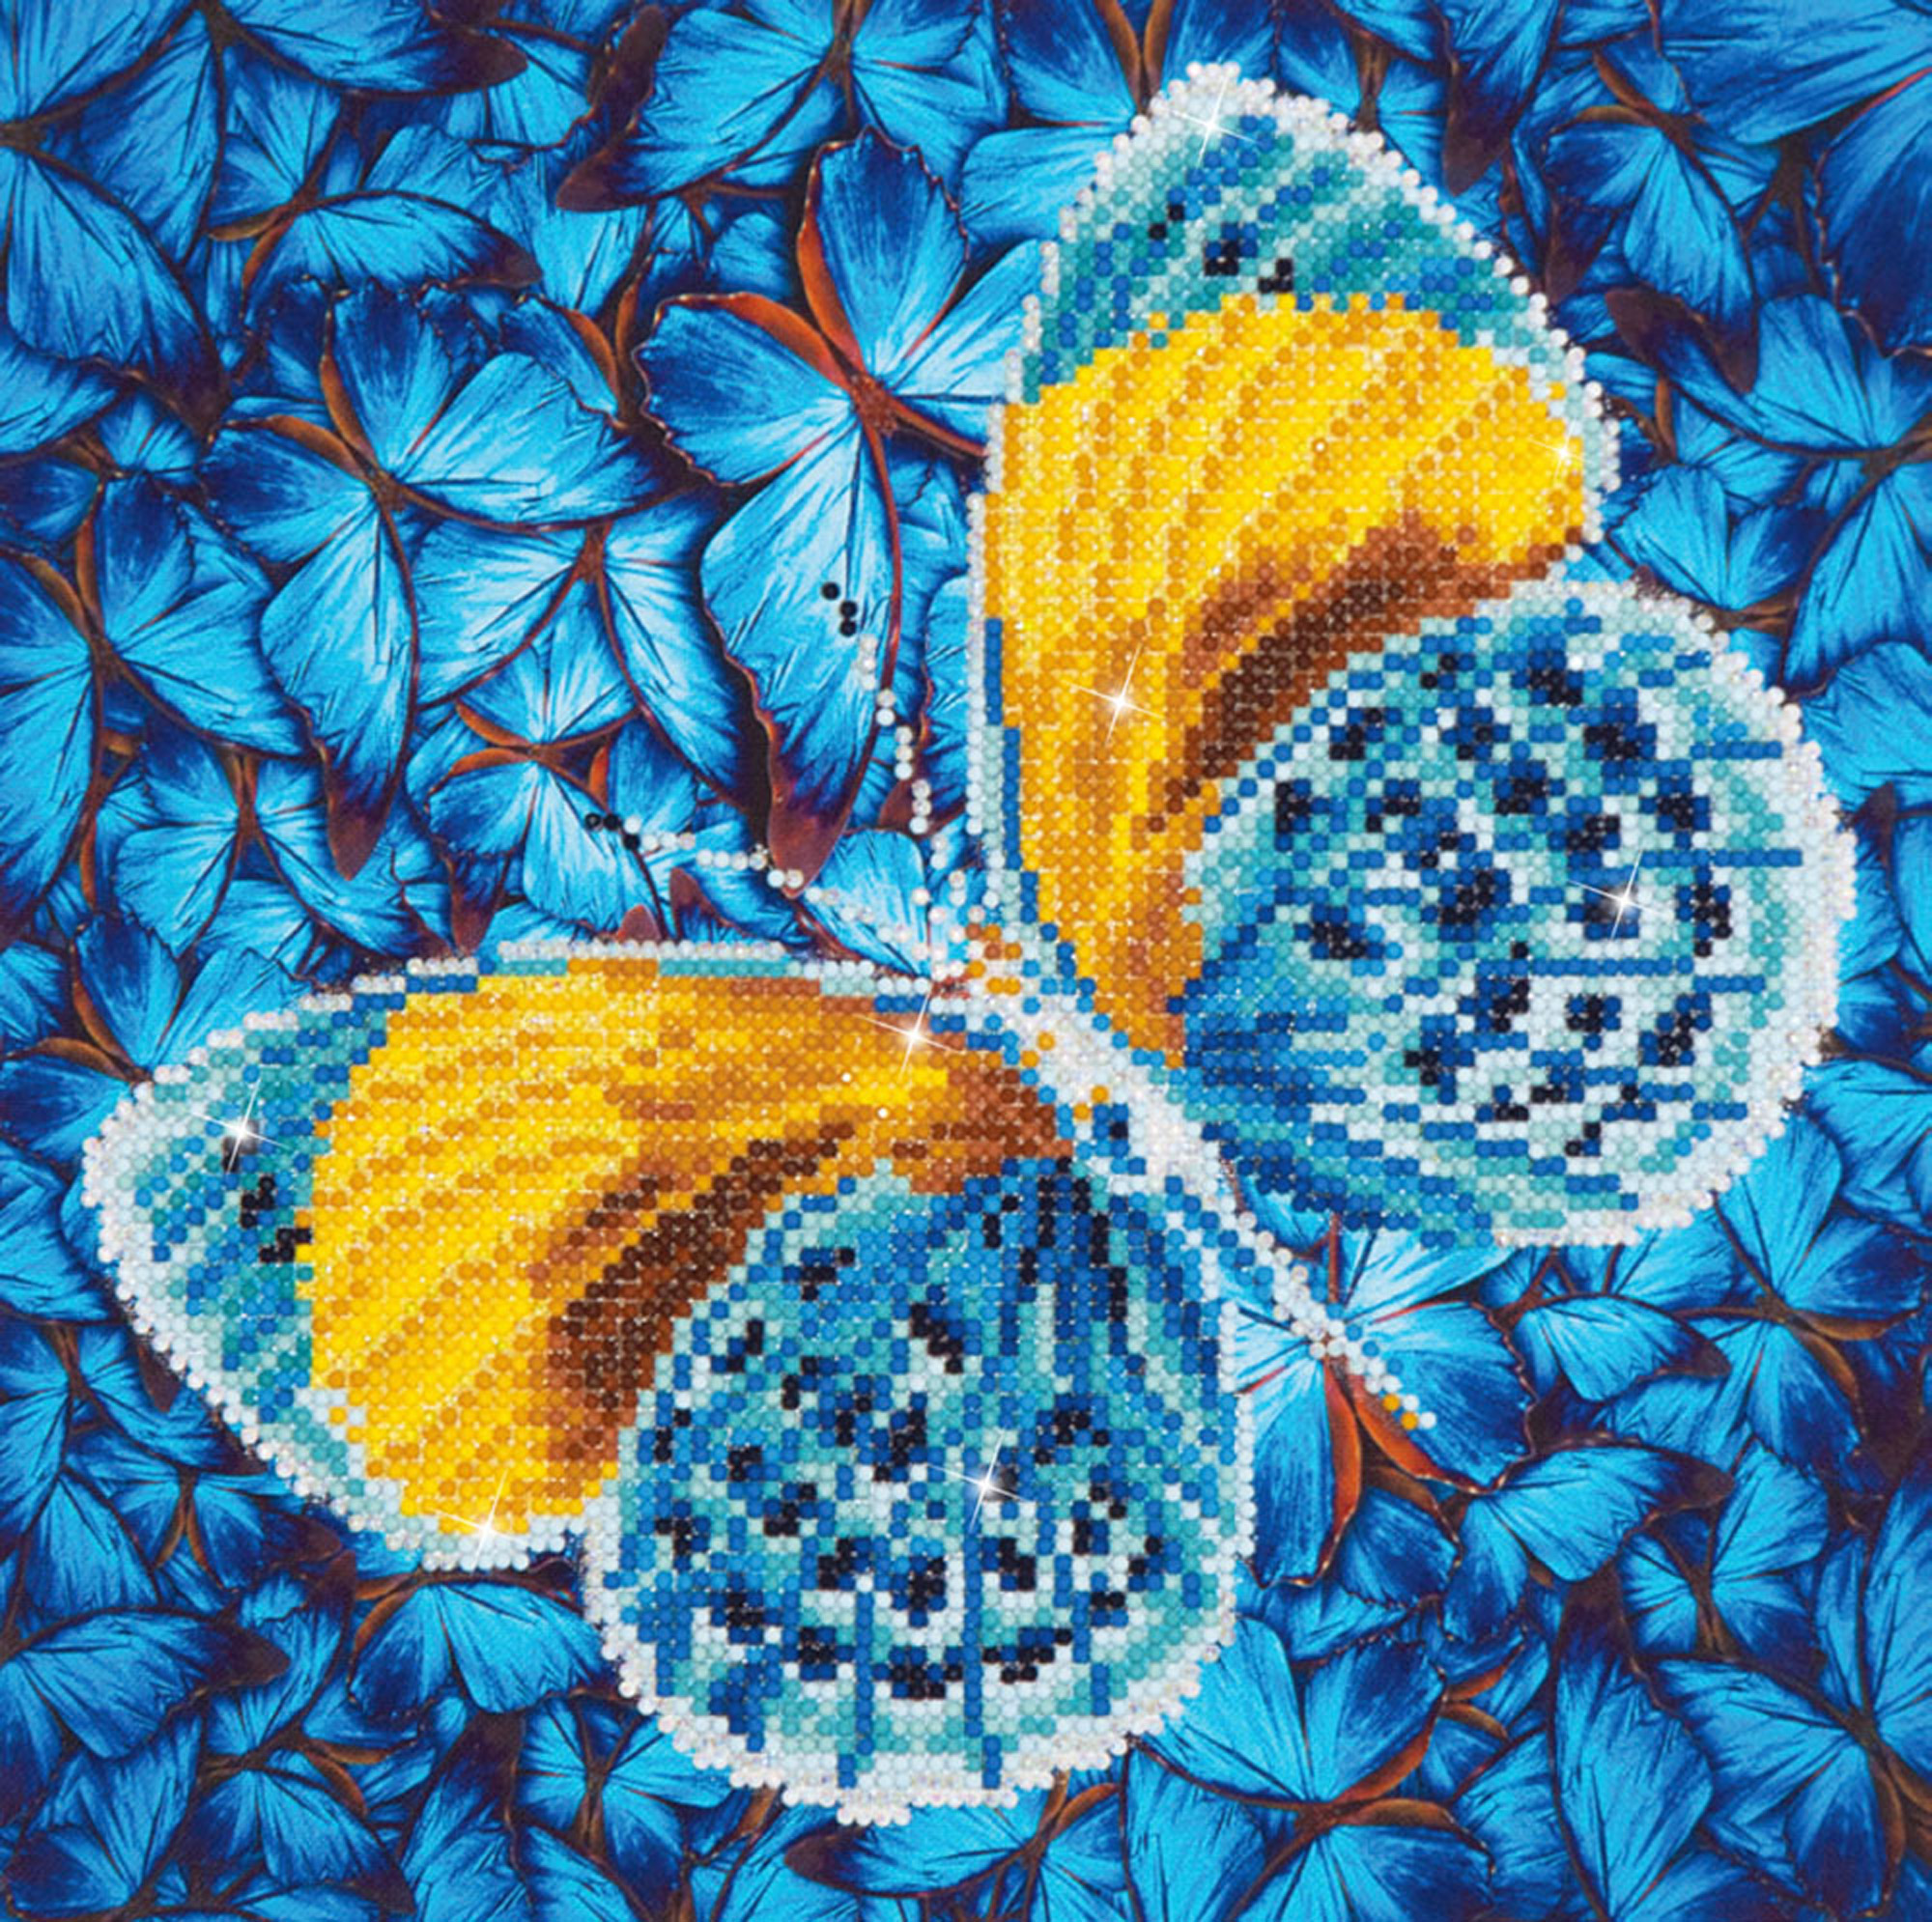 Vezi detalii pentru Tablou cu diamante - Fluture albastru cu auriu, 31 x 31 cm